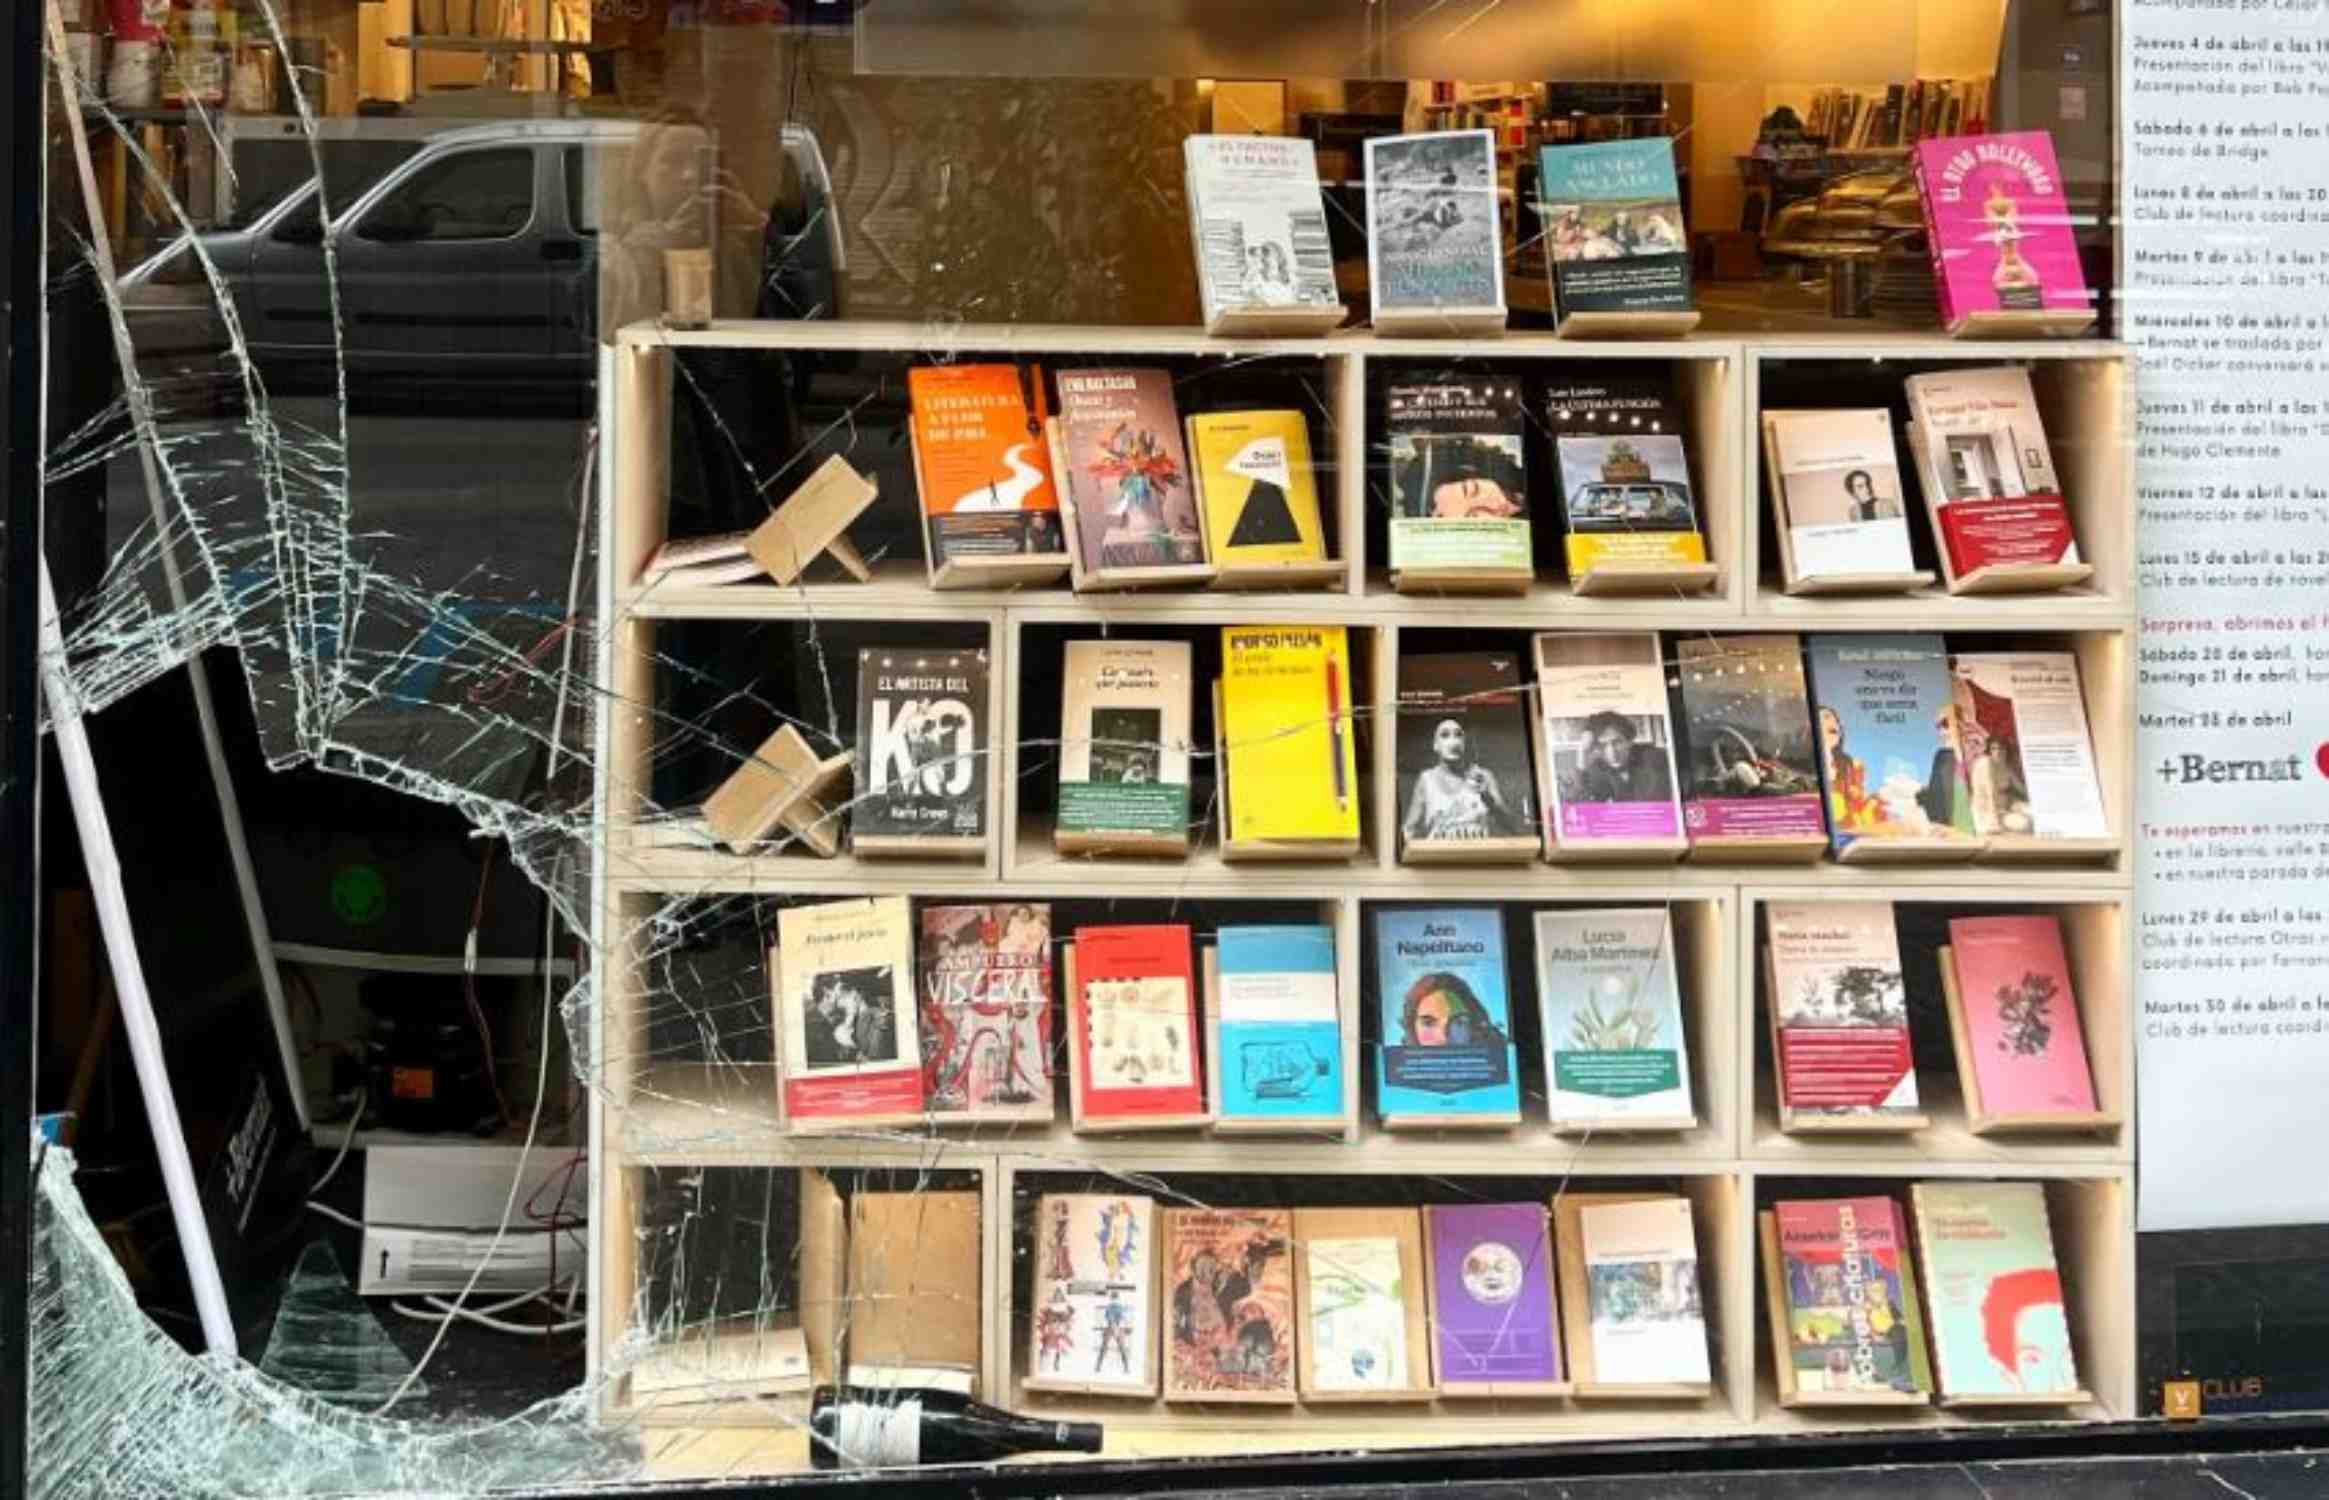 Rebenten l'aparador d'una llibreria del centre de Barcelona per entrar-hi a robar dies després de Sant Jordi